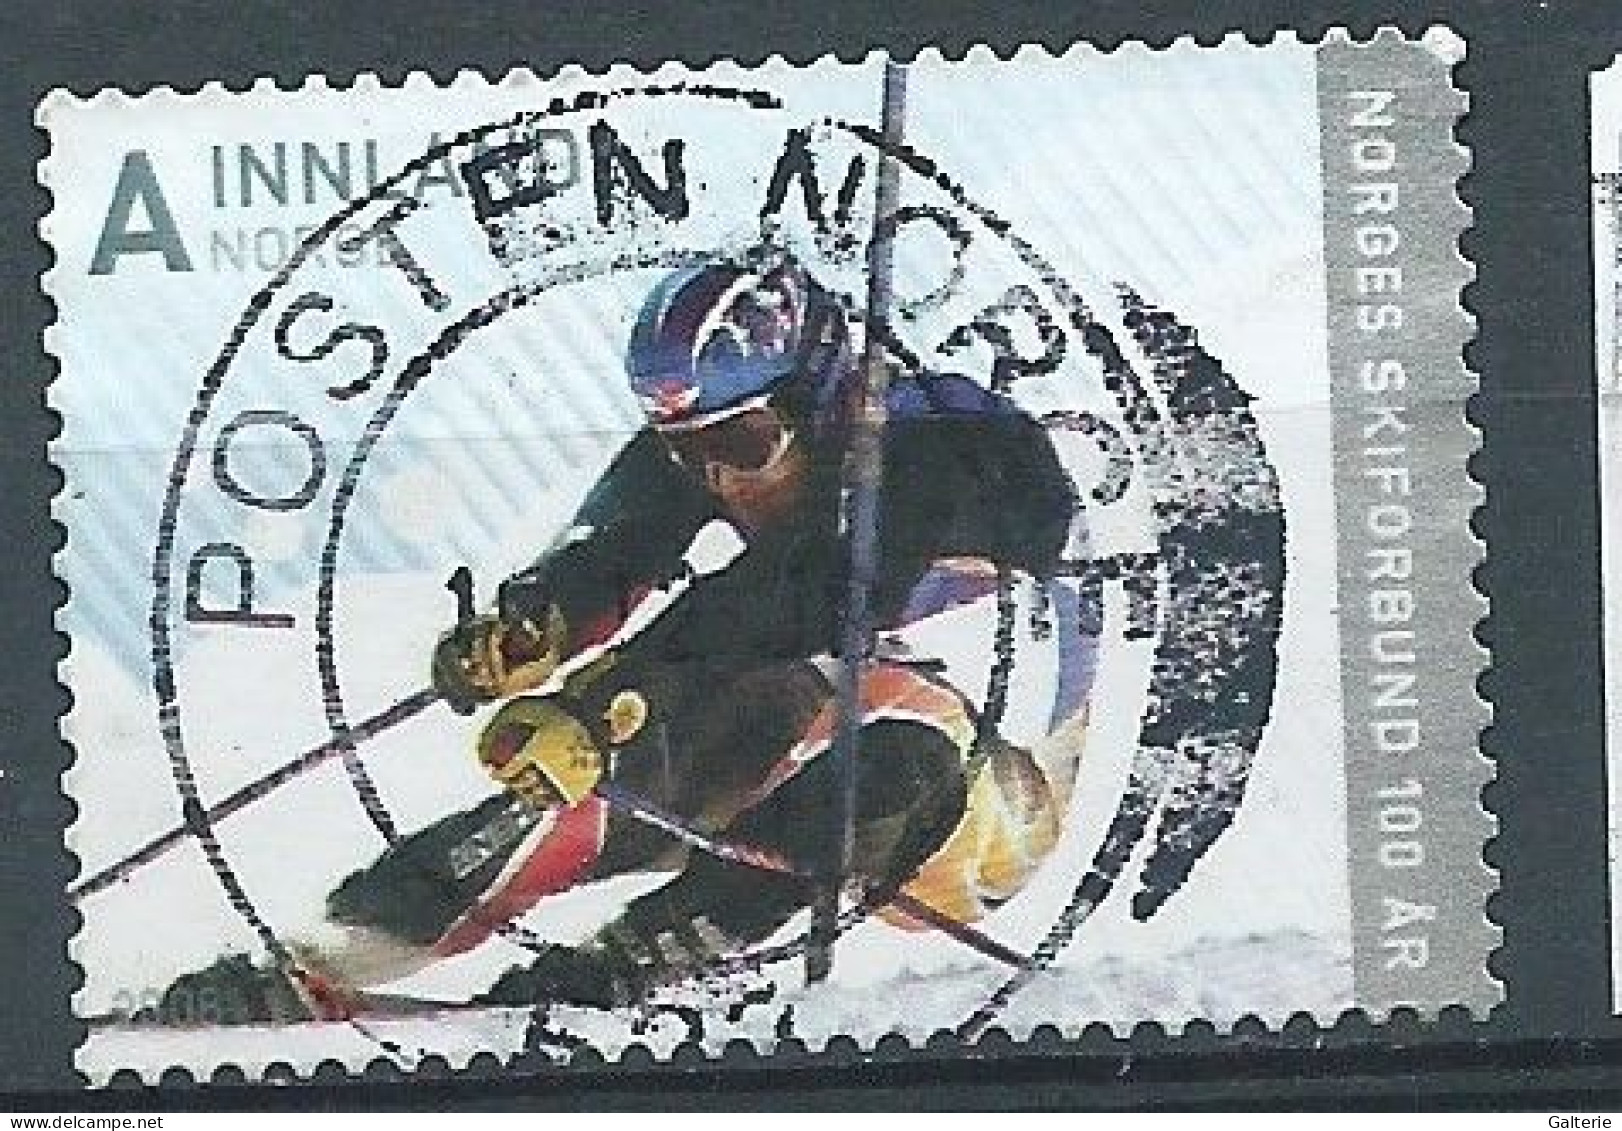 NORVEGE - Obl - 2008 - YT N° 1646 - 100e Anniv De La Federation Norvegienne De Ski - Used Stamps